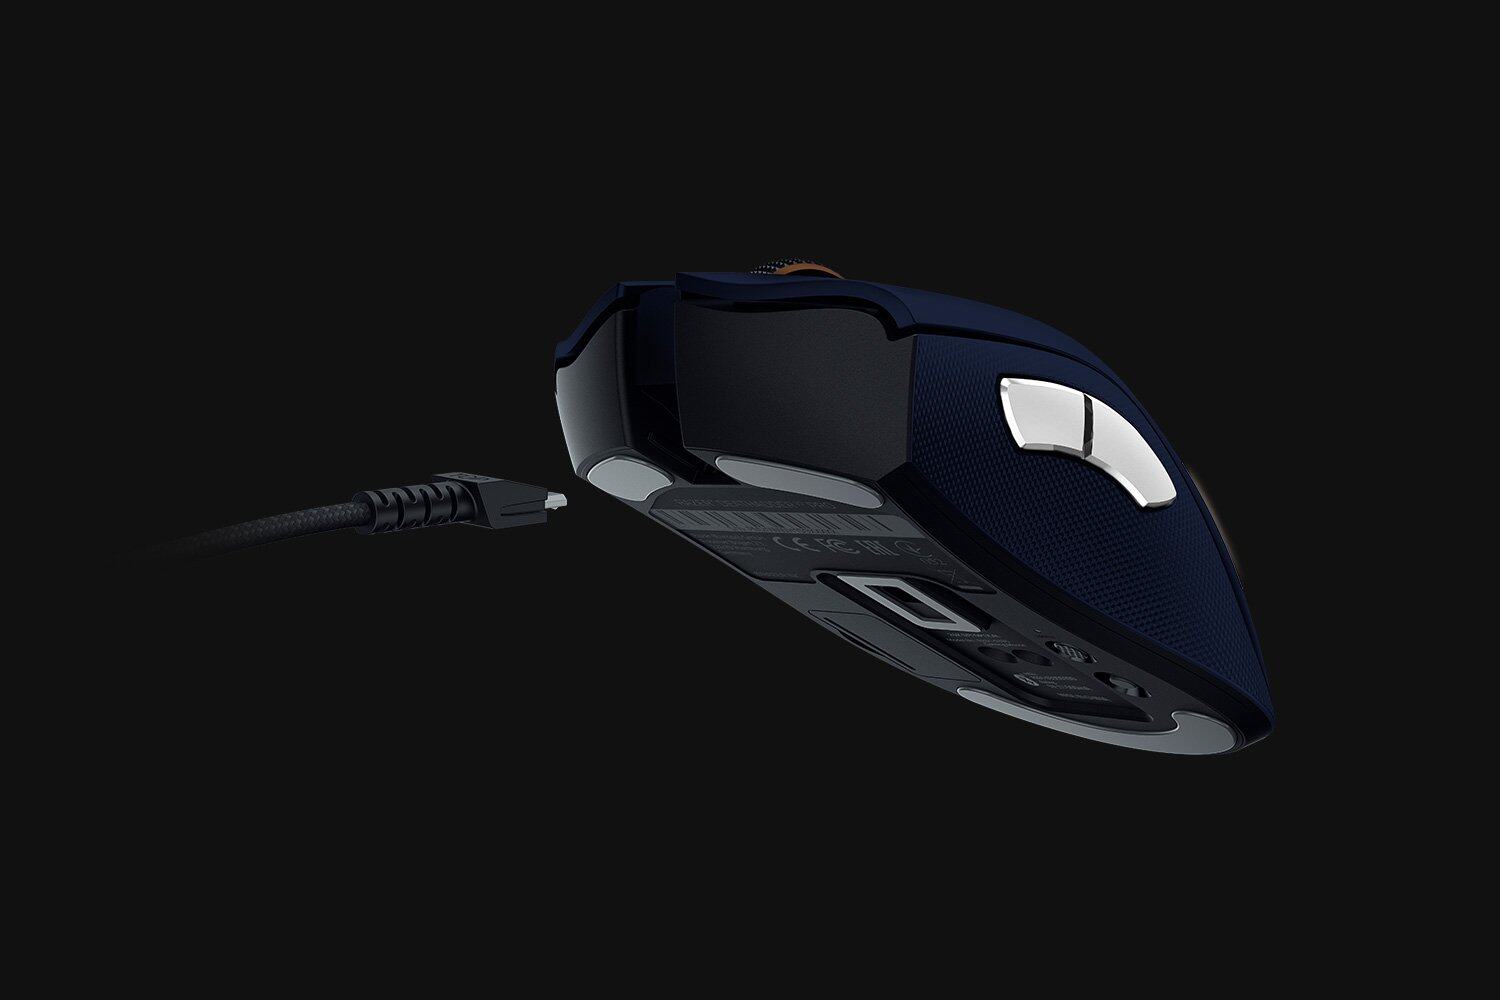 [PER-ORDER]Razer Goliathus Speed Genshin Impact Edition Gaming Mouse Pad (RZ02-01912200-R3M1)  / Razer Deathadder V2 Pro Genshin Impact Edition Gaming Mouse (RZ02-01912200-R3M1) (ETA: 2022-03-14)